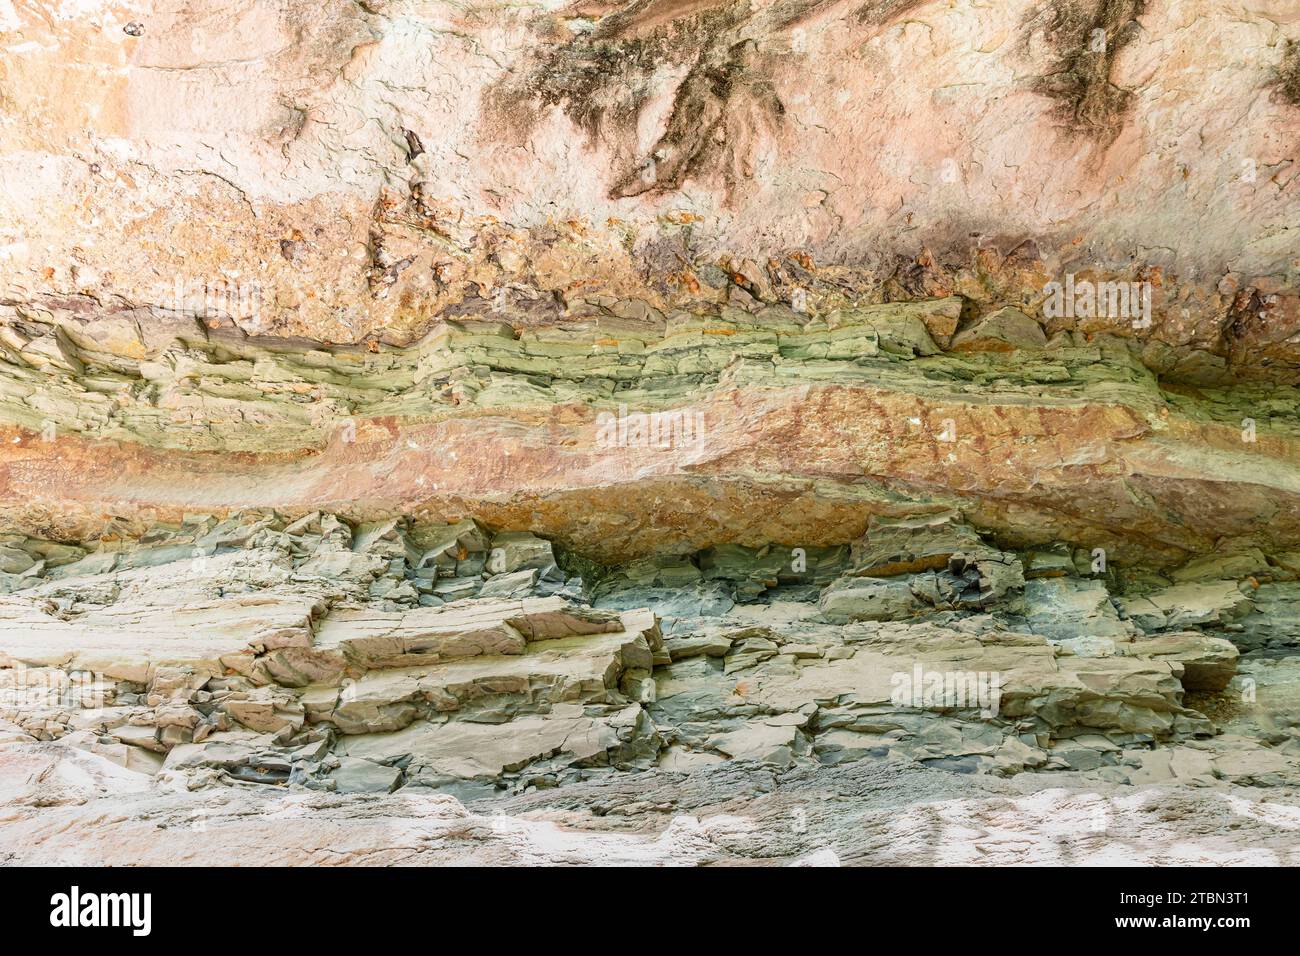 Parc national de PHA Taem, peintures rupestres préhistoriques à la falaise du Mékong (rivière), Groupe 1 'Pha Kham', Ubon Ratchathani, Thaïlande, Asie du Sud-est, Asie Banque D'Images